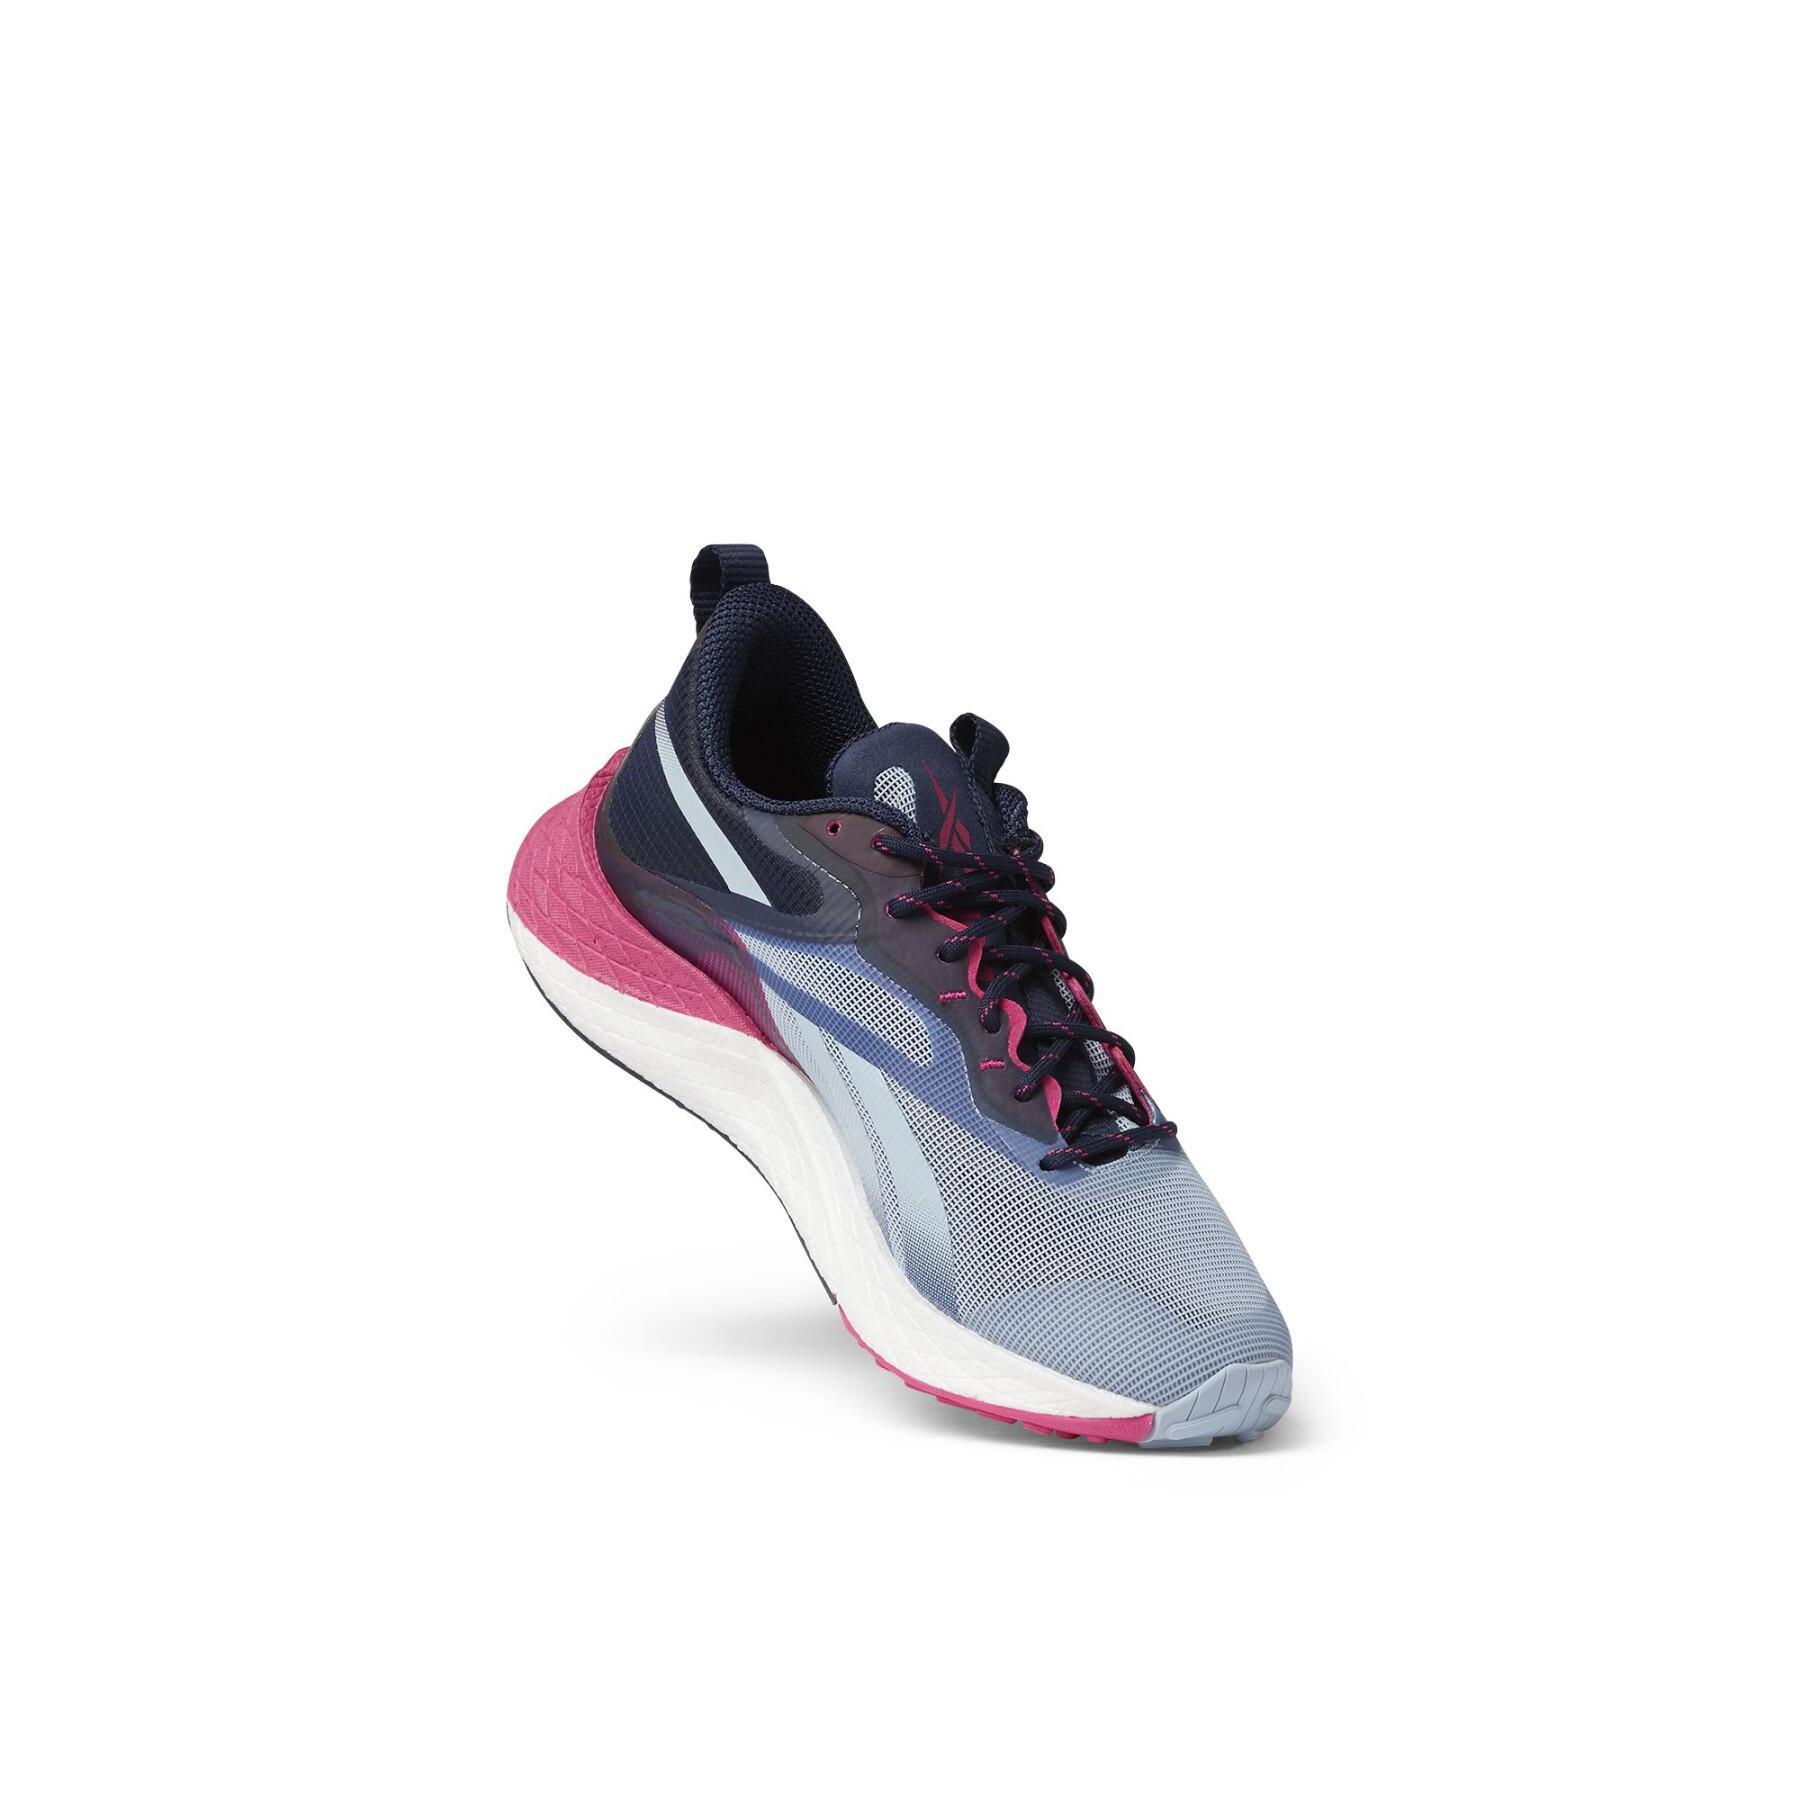 Schuhe für Frauen Reebok Floatride Energy 3 Adventure